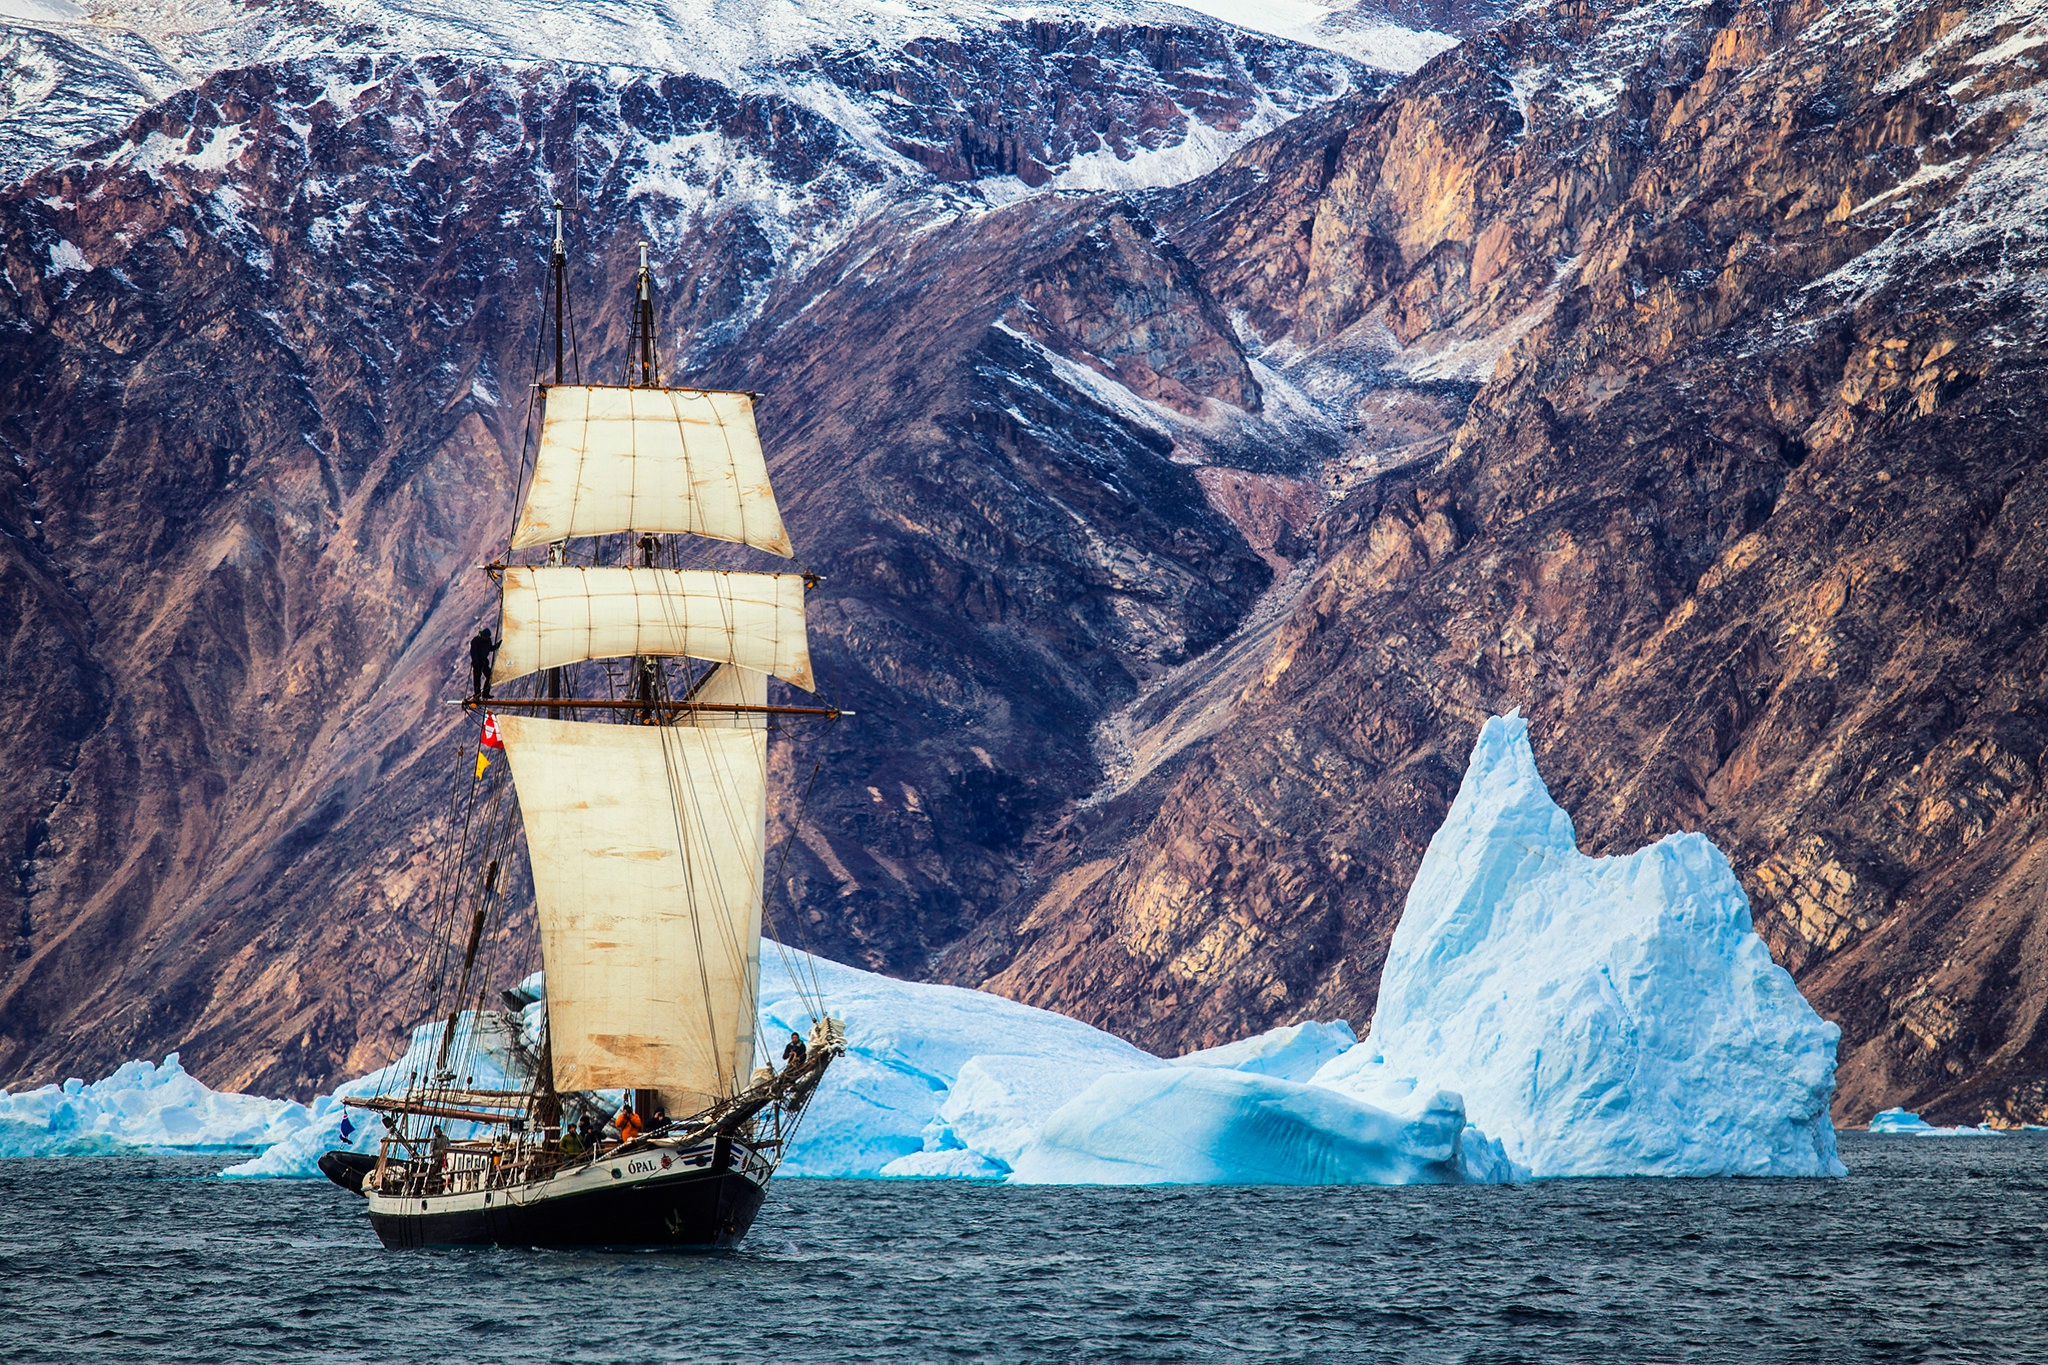 General 2048x1365 Greenland water ship vehicle sailing ship